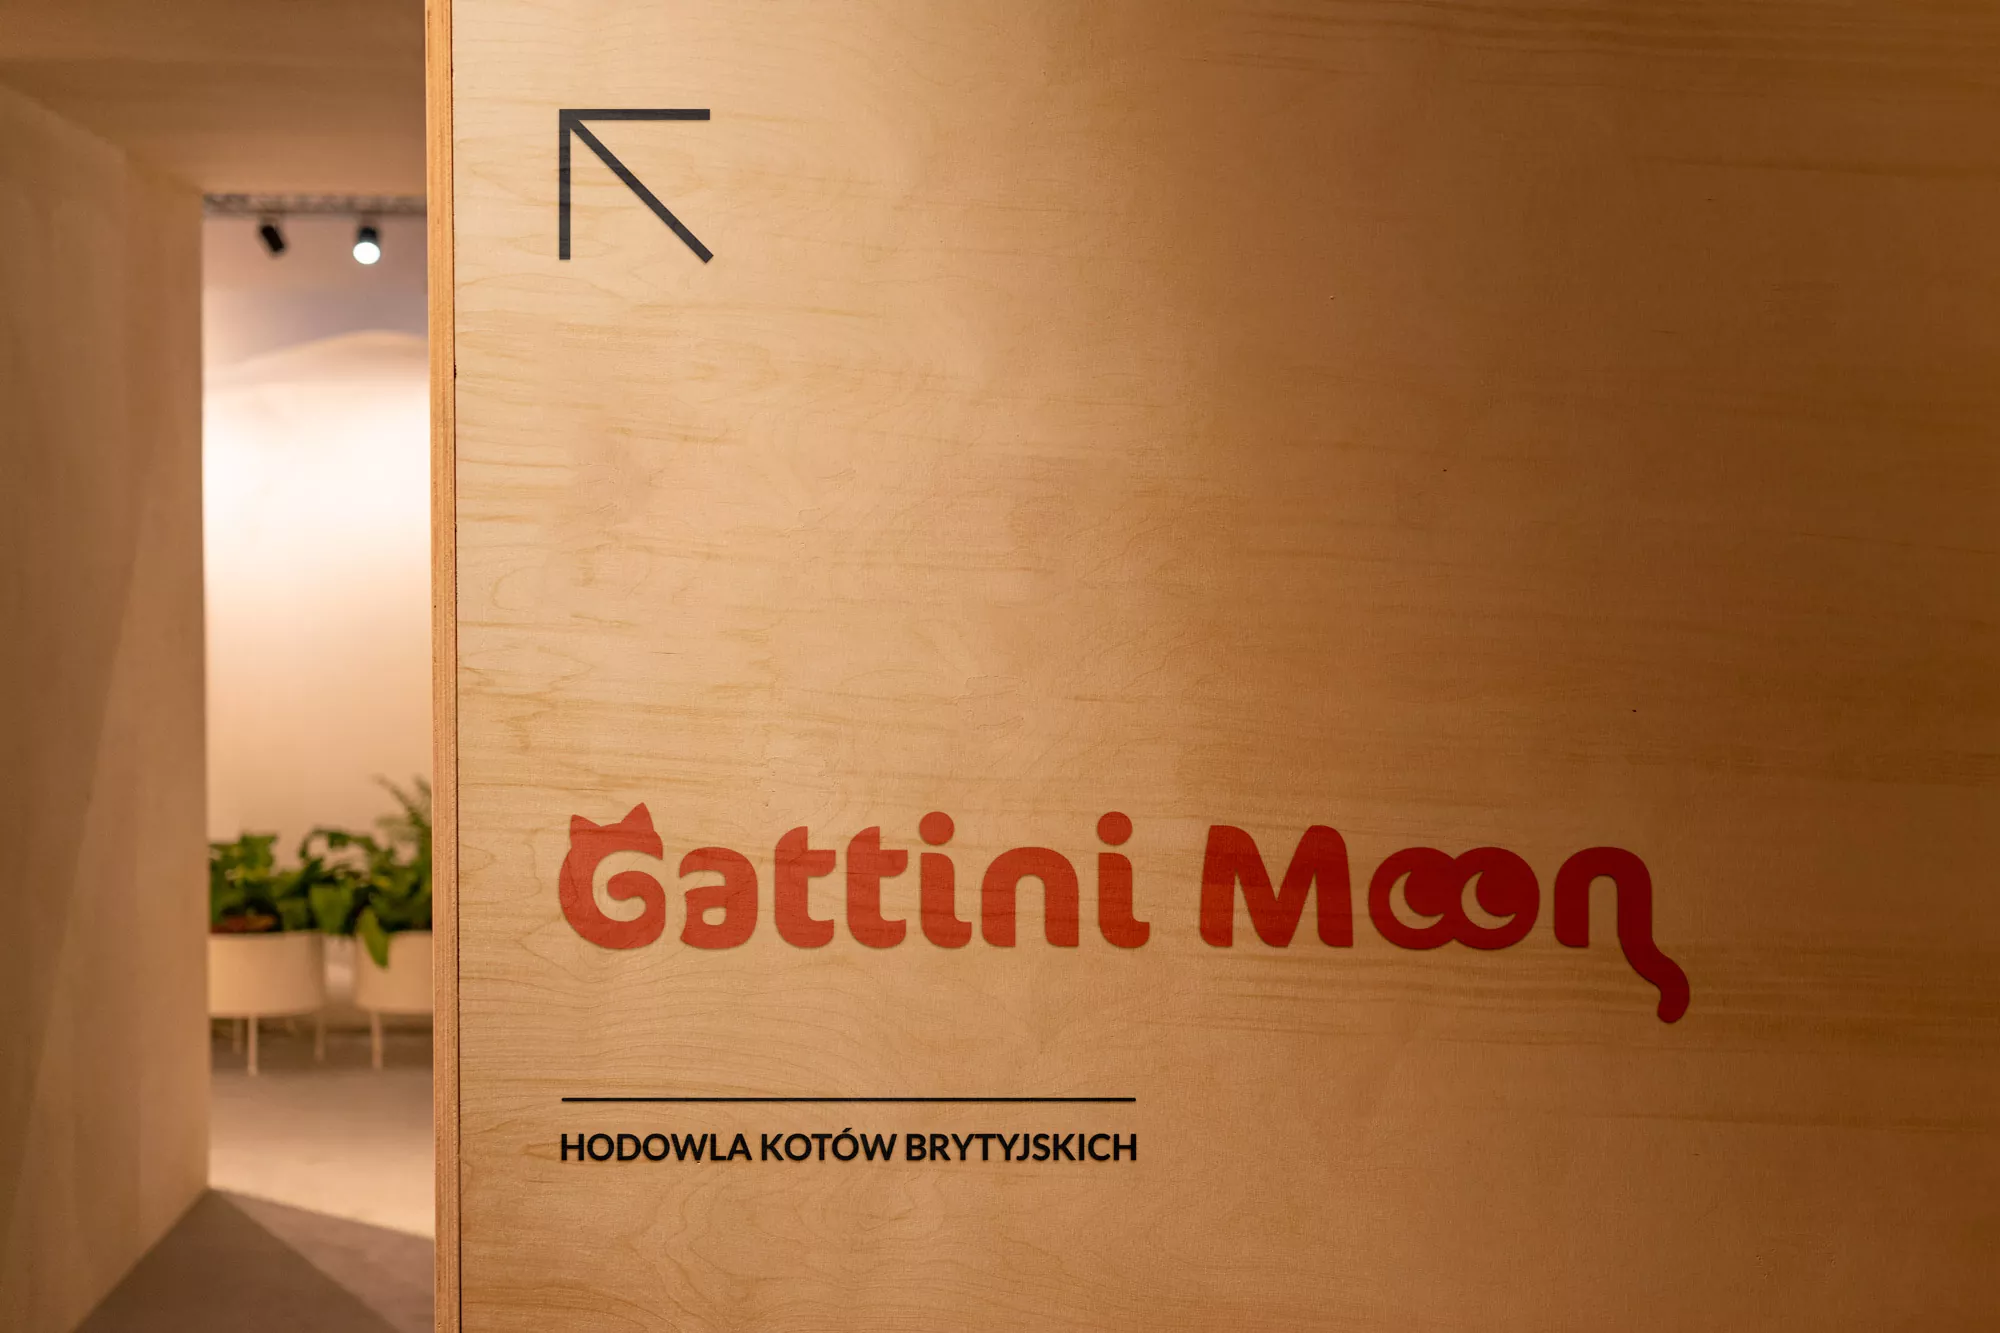 Gattini Moon - projekt loga, wizualizacja na ścianie